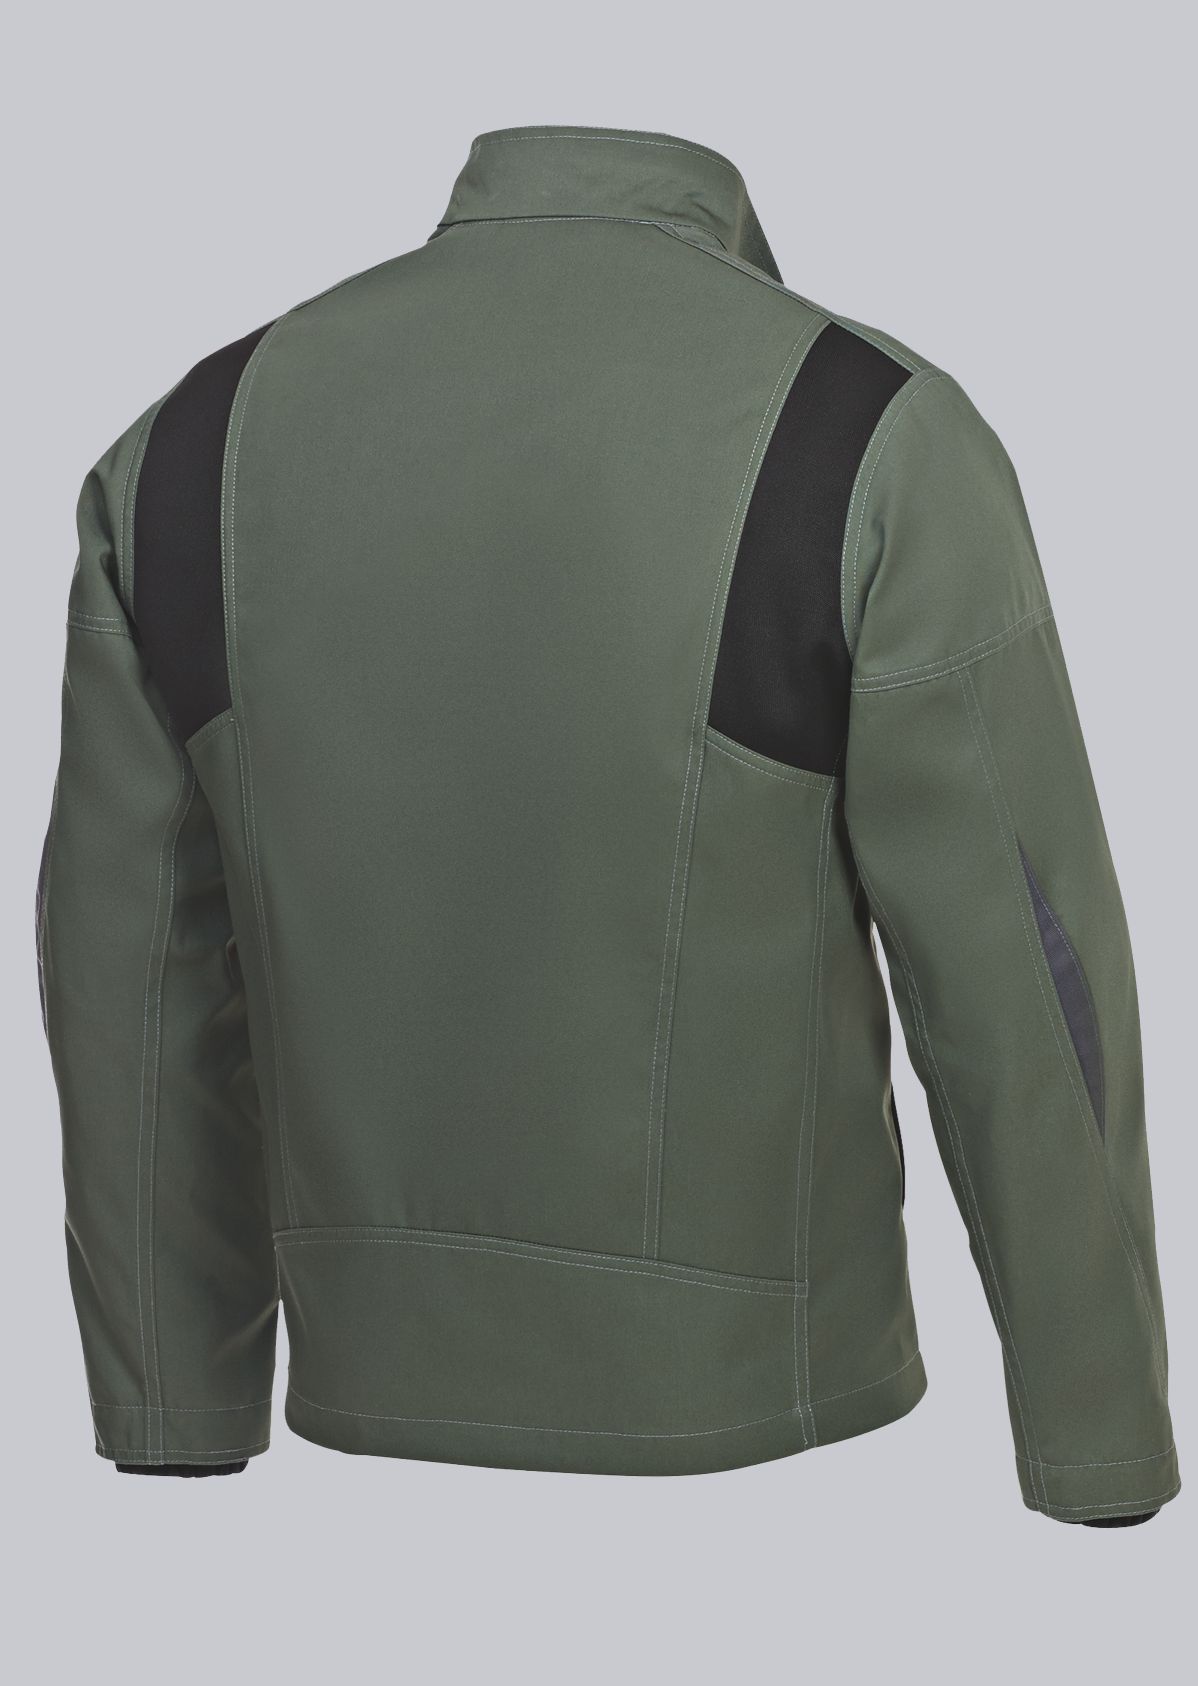 BP® Komfort-Arbeitsjacke mit Stretcheinsätzen